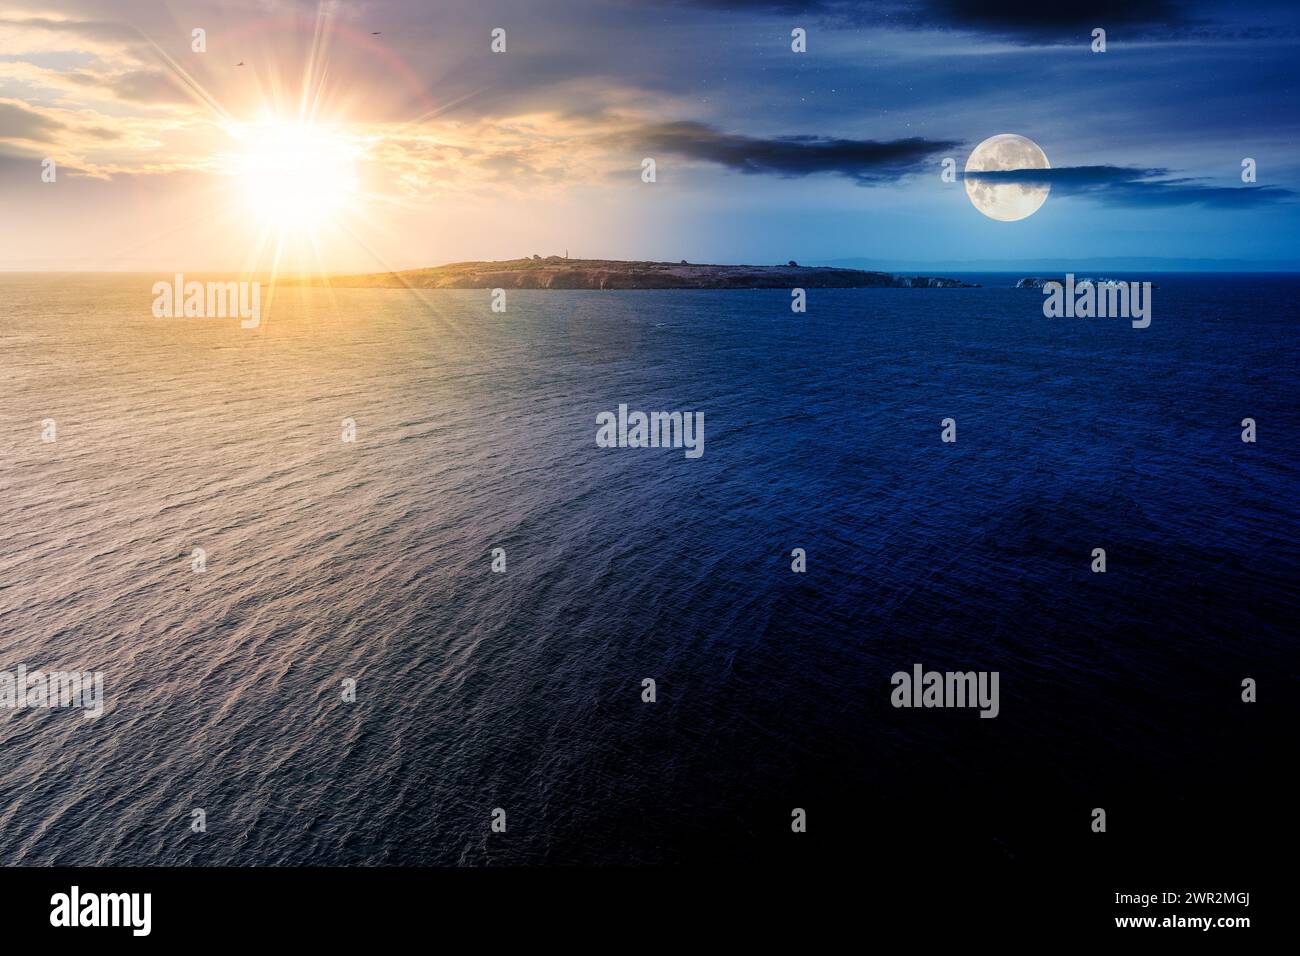 île dans la mer au solstice d'été. paysage marin avec terre au loin sous un ciel avec soleil et lune. concept de changement de jour et de nuit Banque D'Images